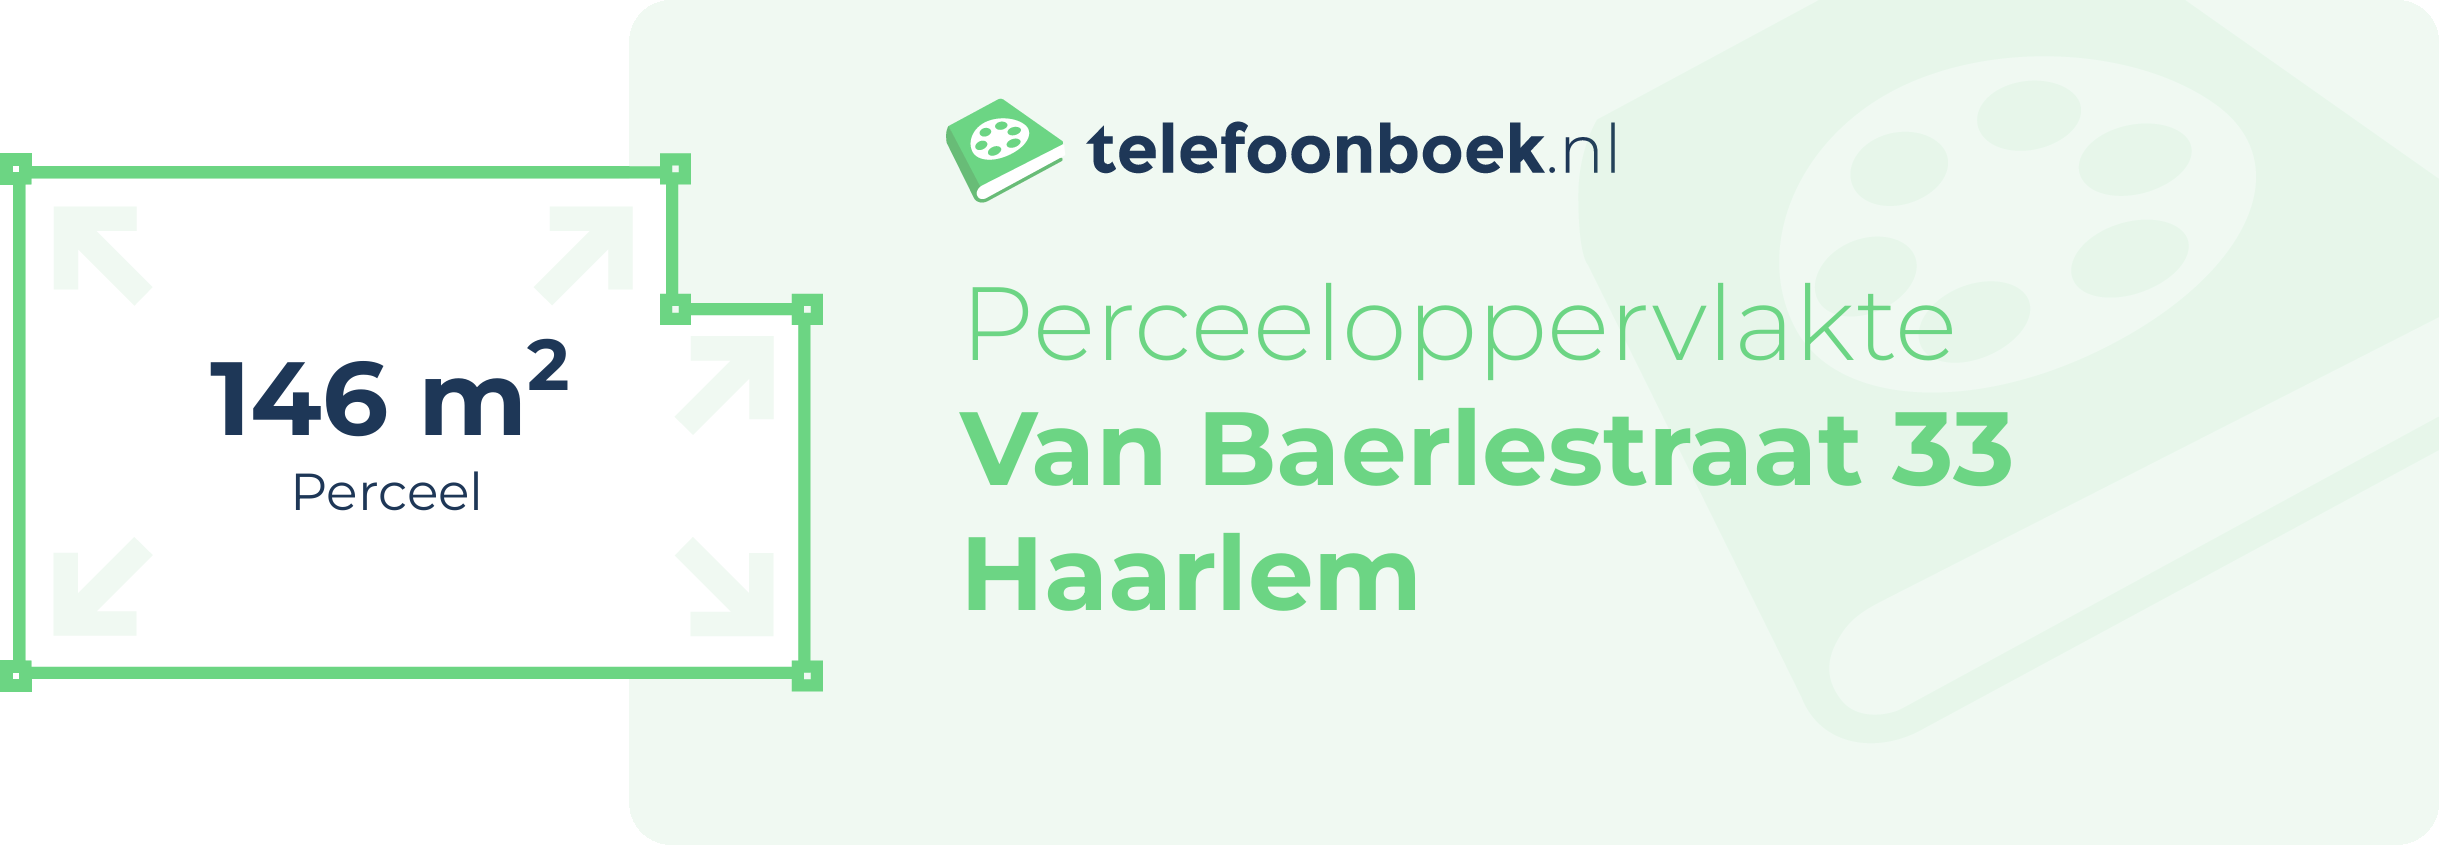 Perceeloppervlakte Van Baerlestraat 33 Haarlem